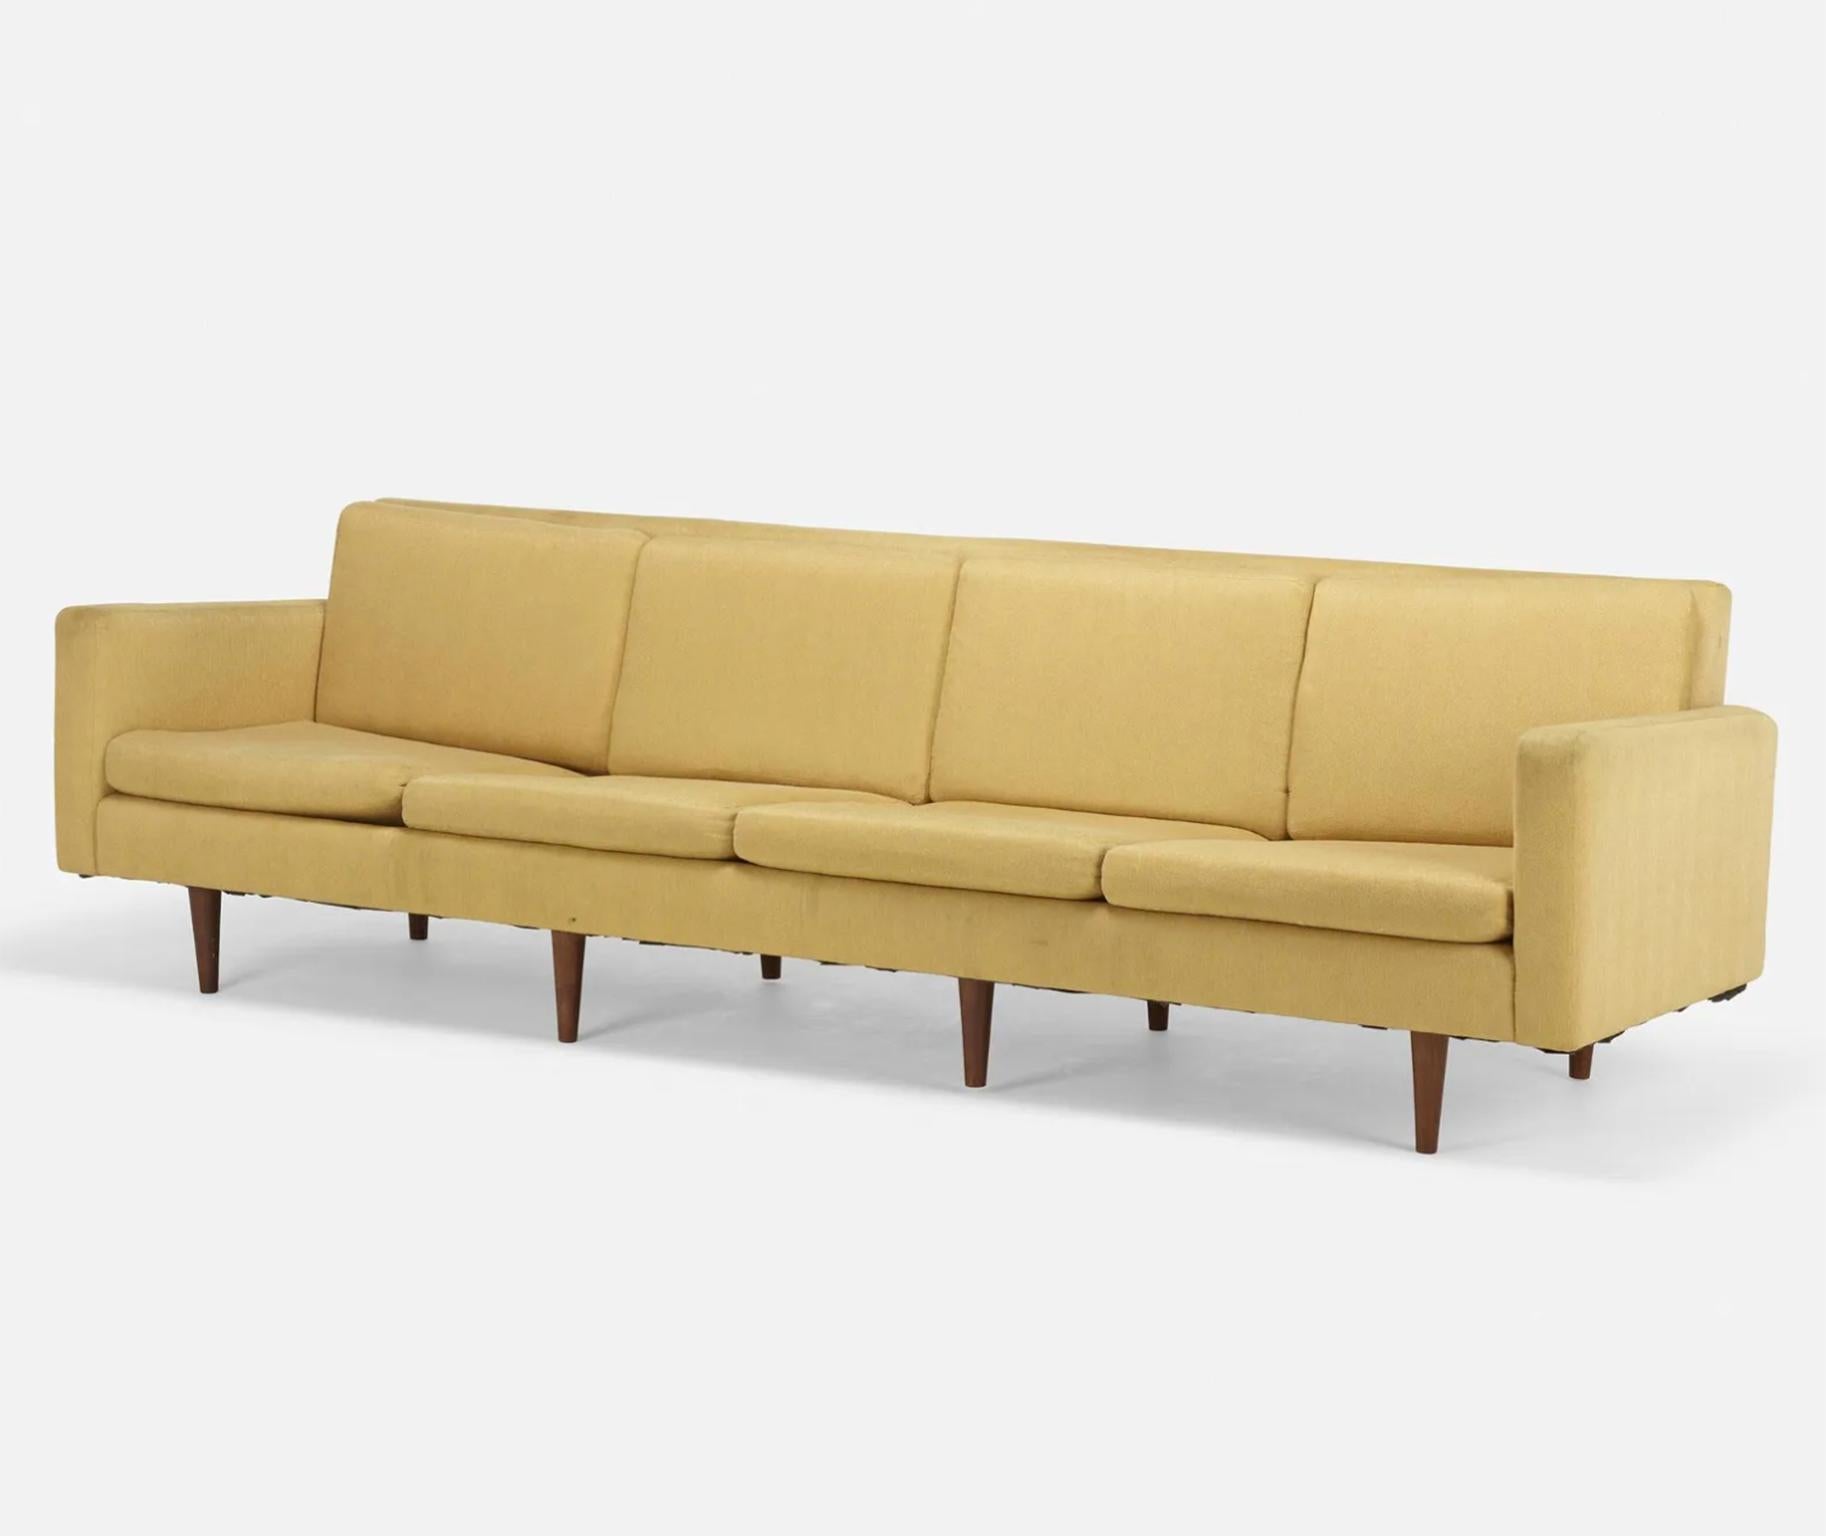 Schönes dänisches Sofa von 1955, entworfen von Johannes Aasbjerg, mit originaler Polsterung und 4 Sitzplätzen. Langes 106 Zoll langes Sofa. Steht auf 8 massiven, konischen Teakholzbeinen. Verwenden Sie es so wie es ist oder lassen Sie es komplett